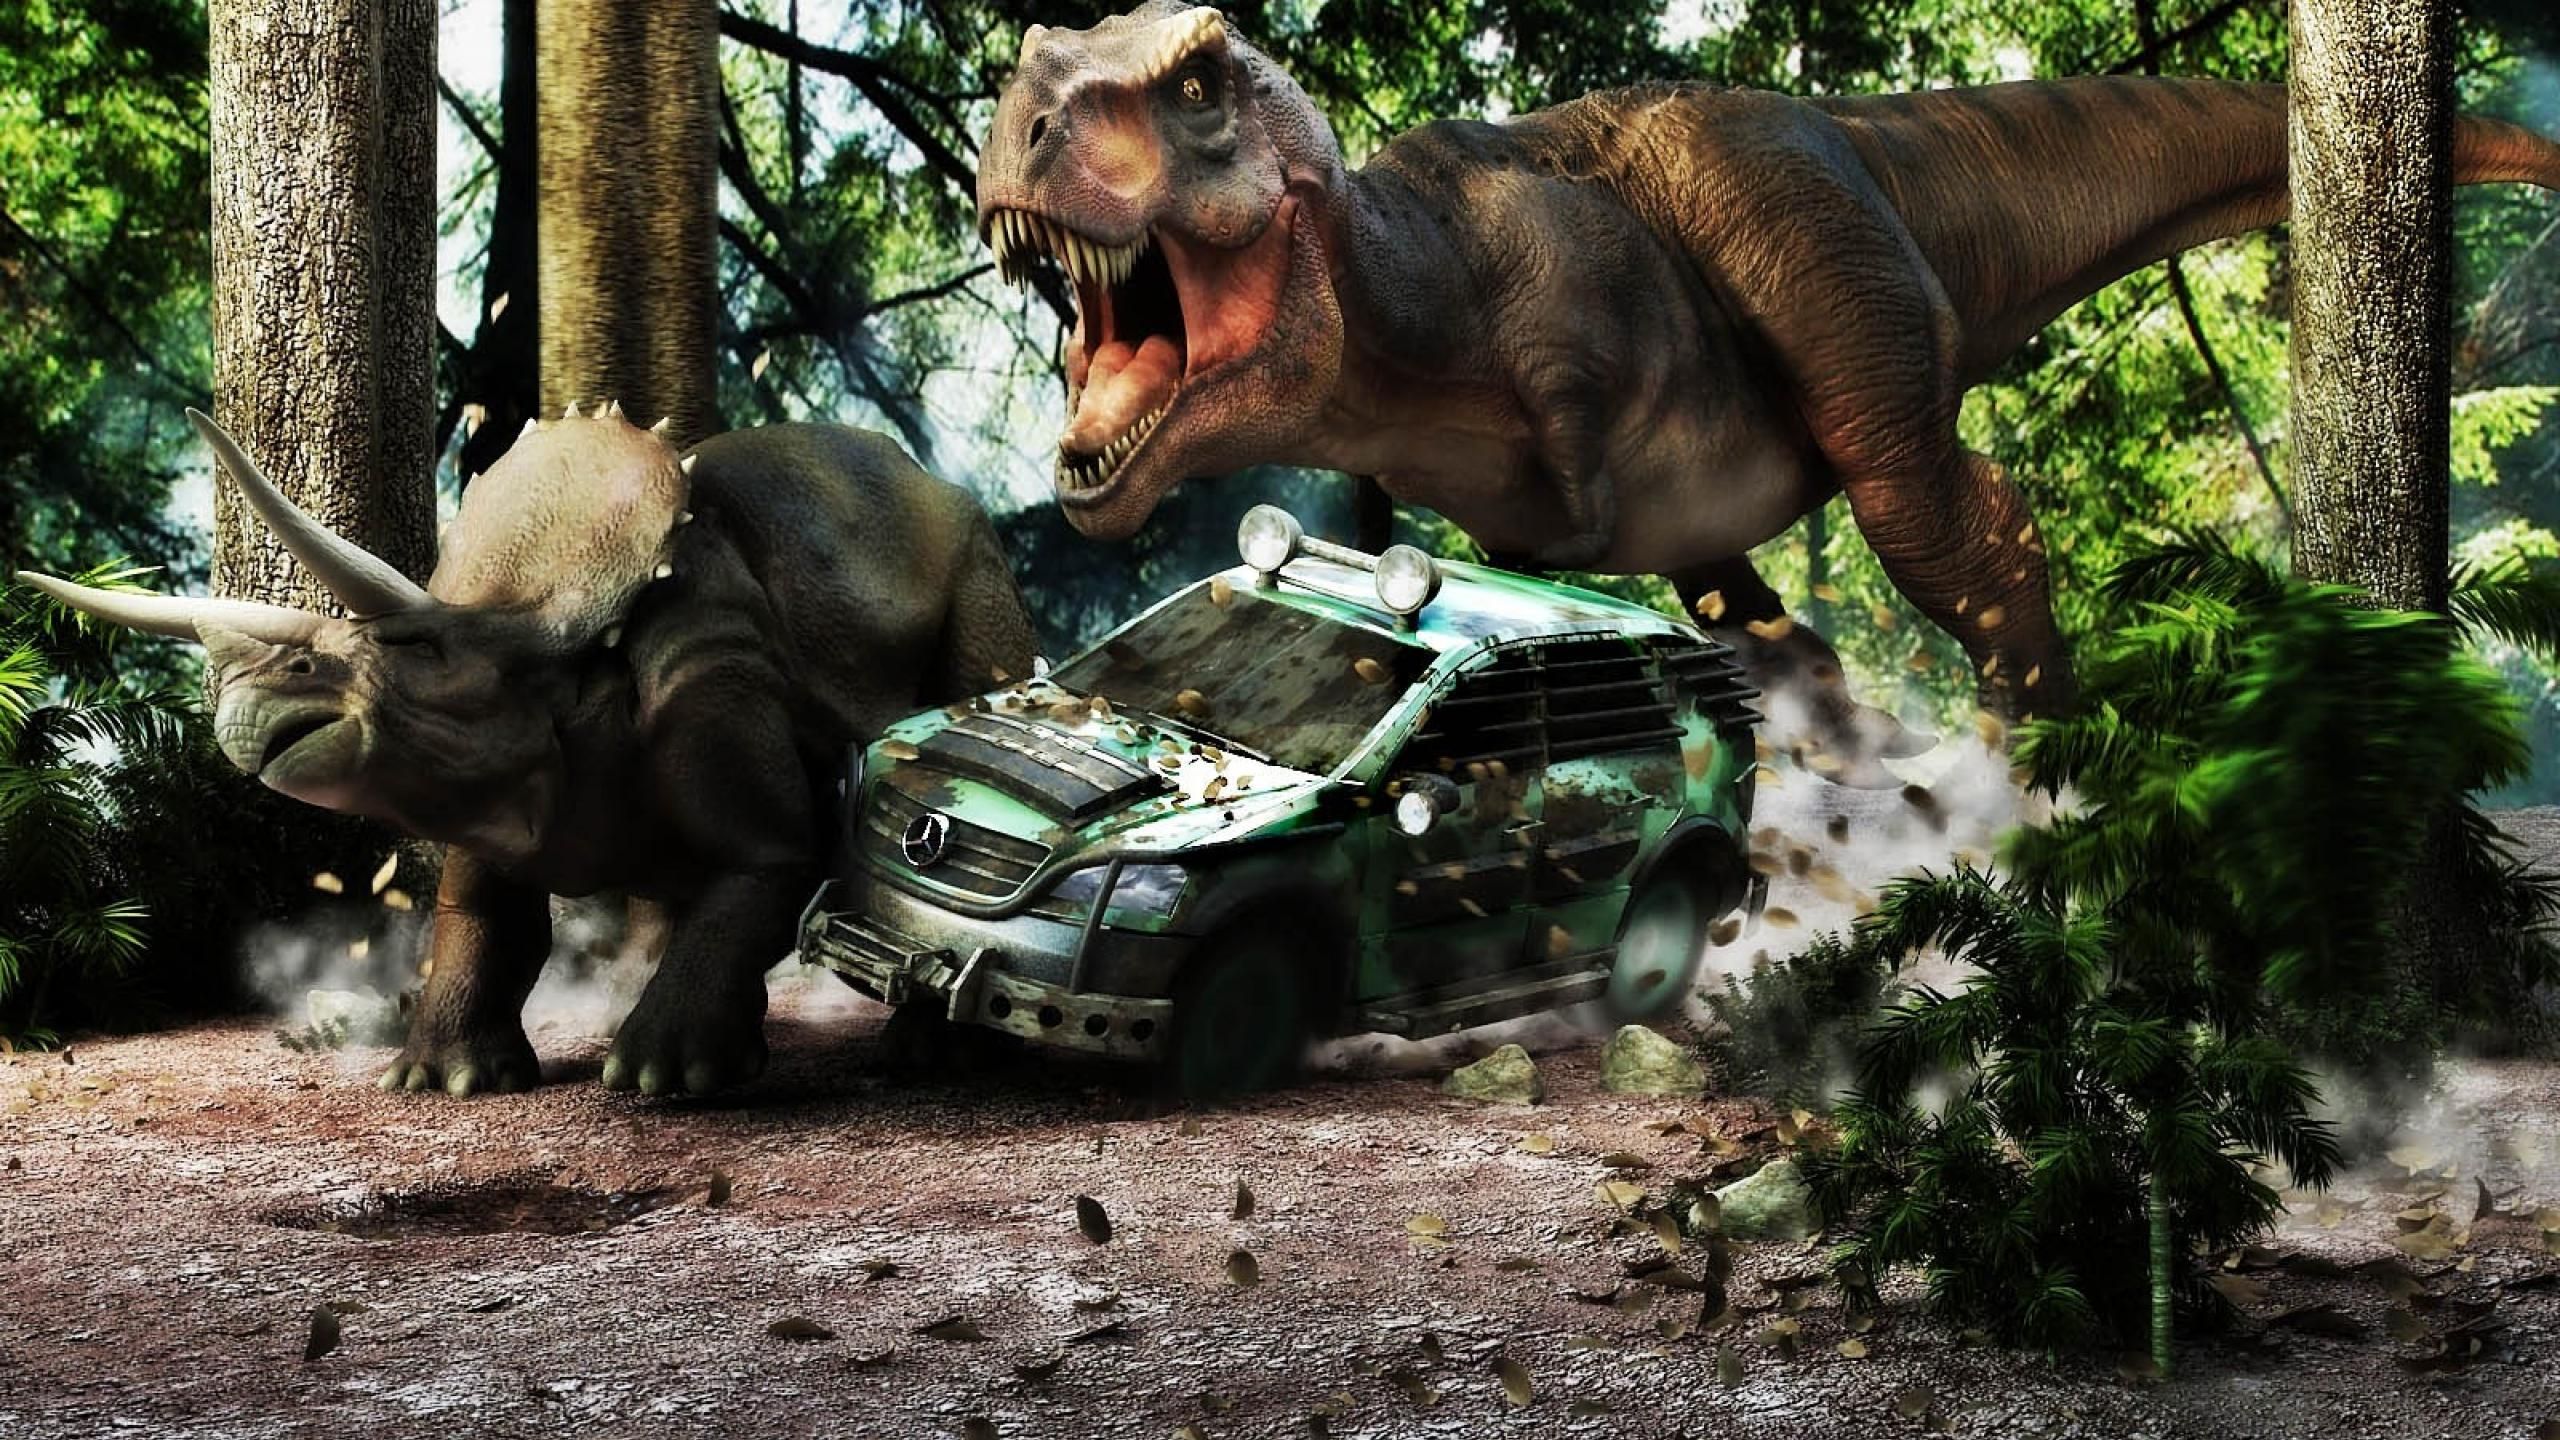 Jurassic World T Rex Wallpaper - Jurassic World 2015 Dinosaur , HD Wallpaper & Backgrounds